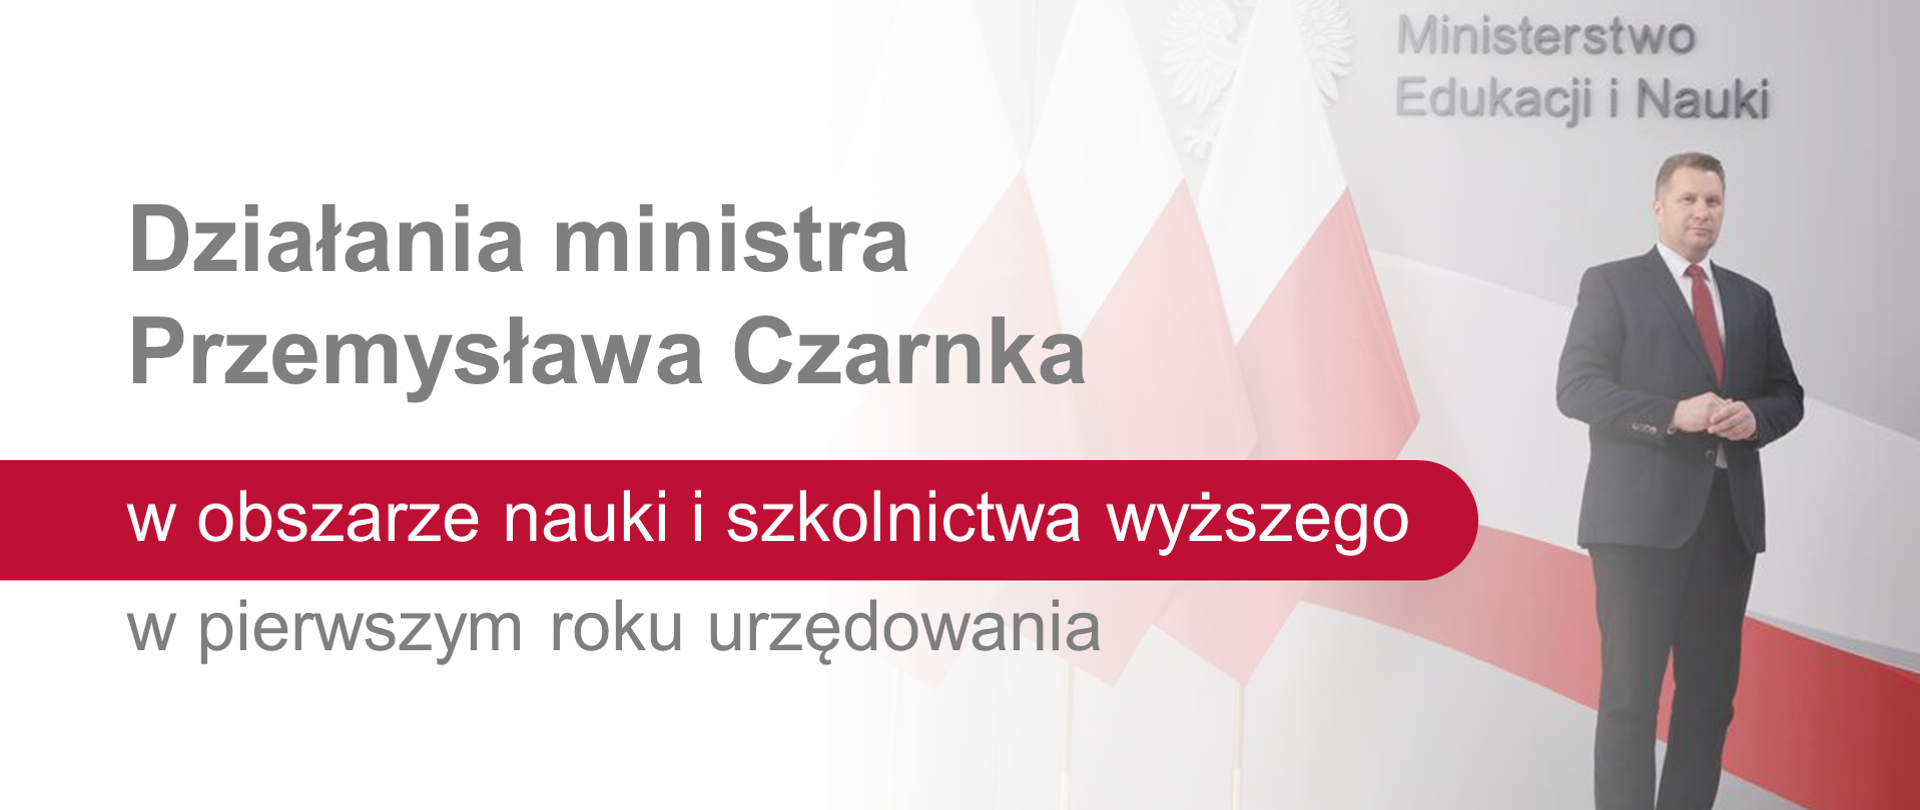 Minister Przemysław Czarnek, obok tekst: "Działania ministra Przemysława Czarnka w obszarze nauki i szkolnictwa wyższego w pierwszym roku urzędowania"